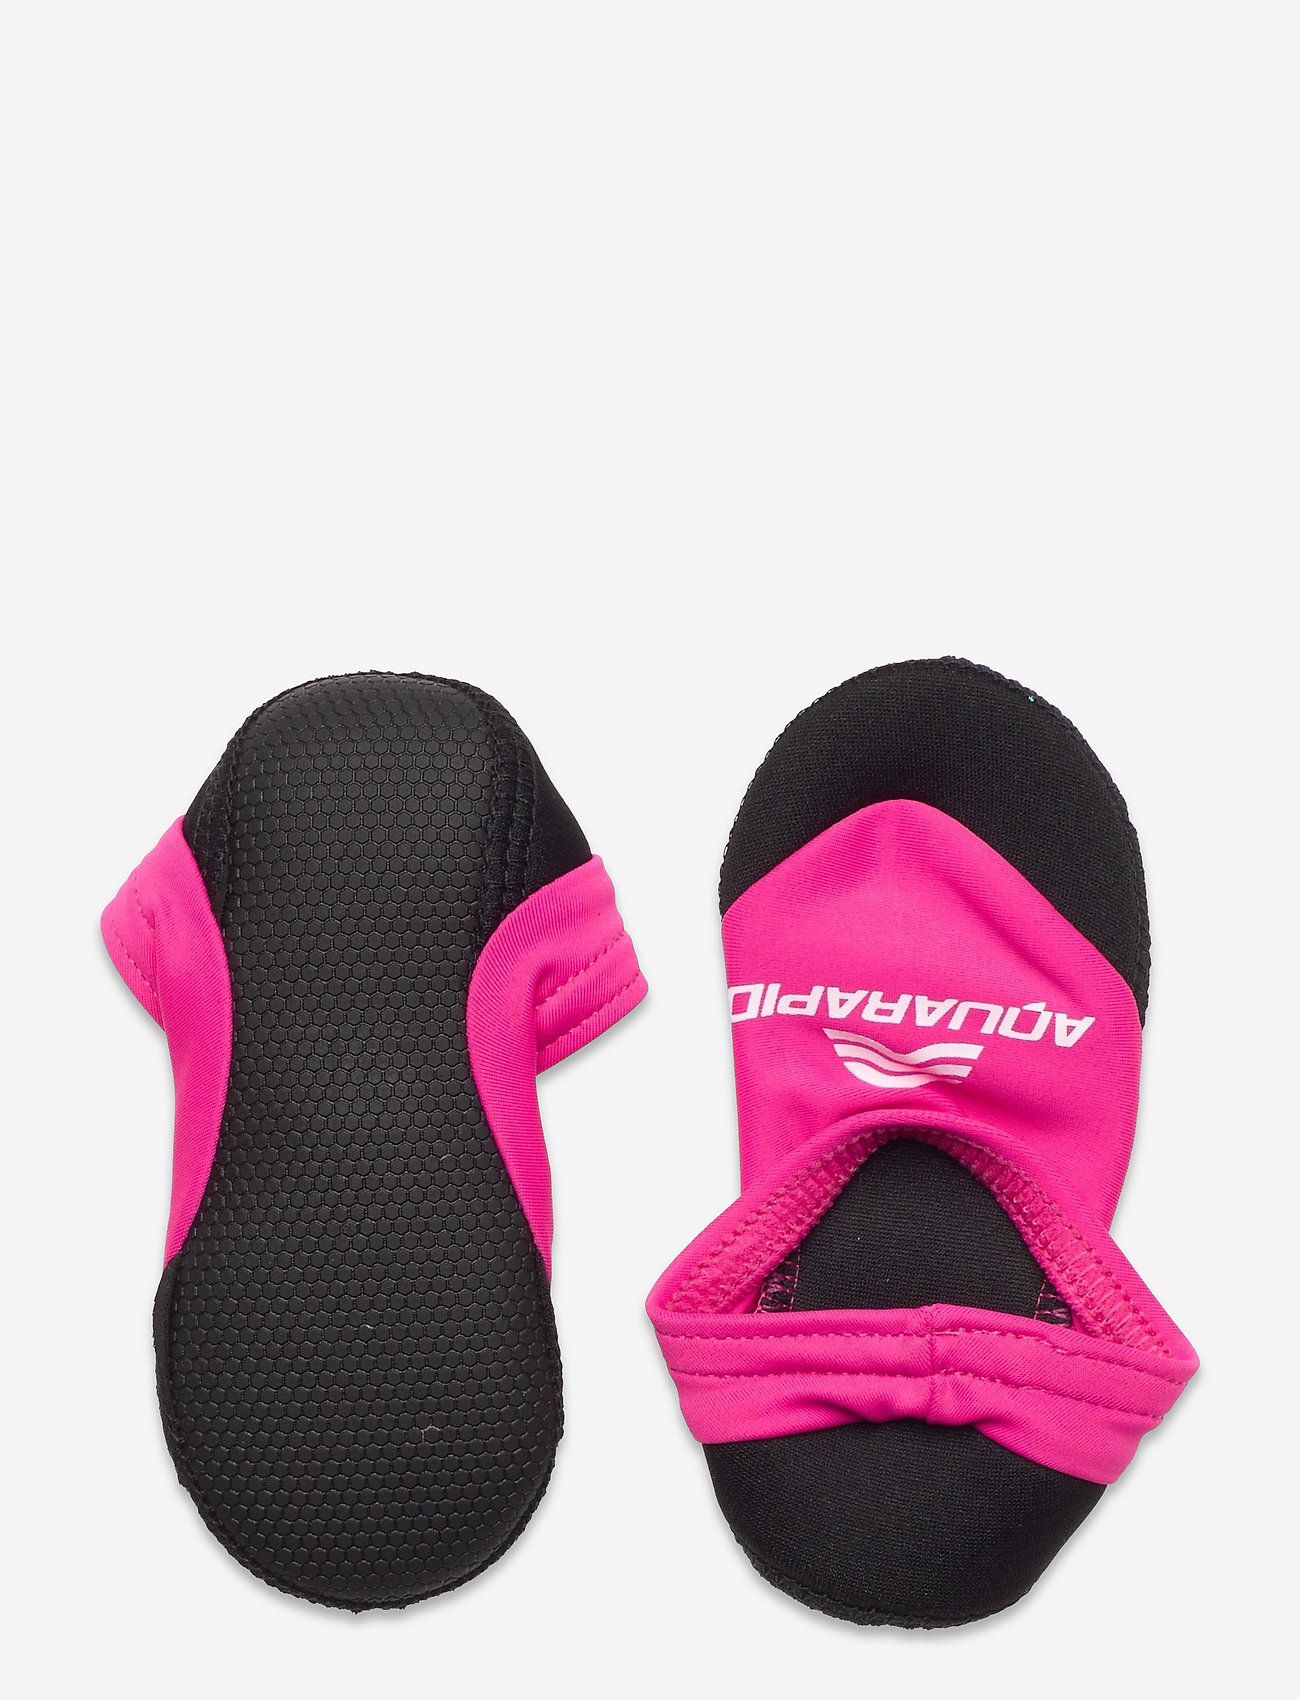 Aquarapid - NEOSOCKS - slipper - pink - 1